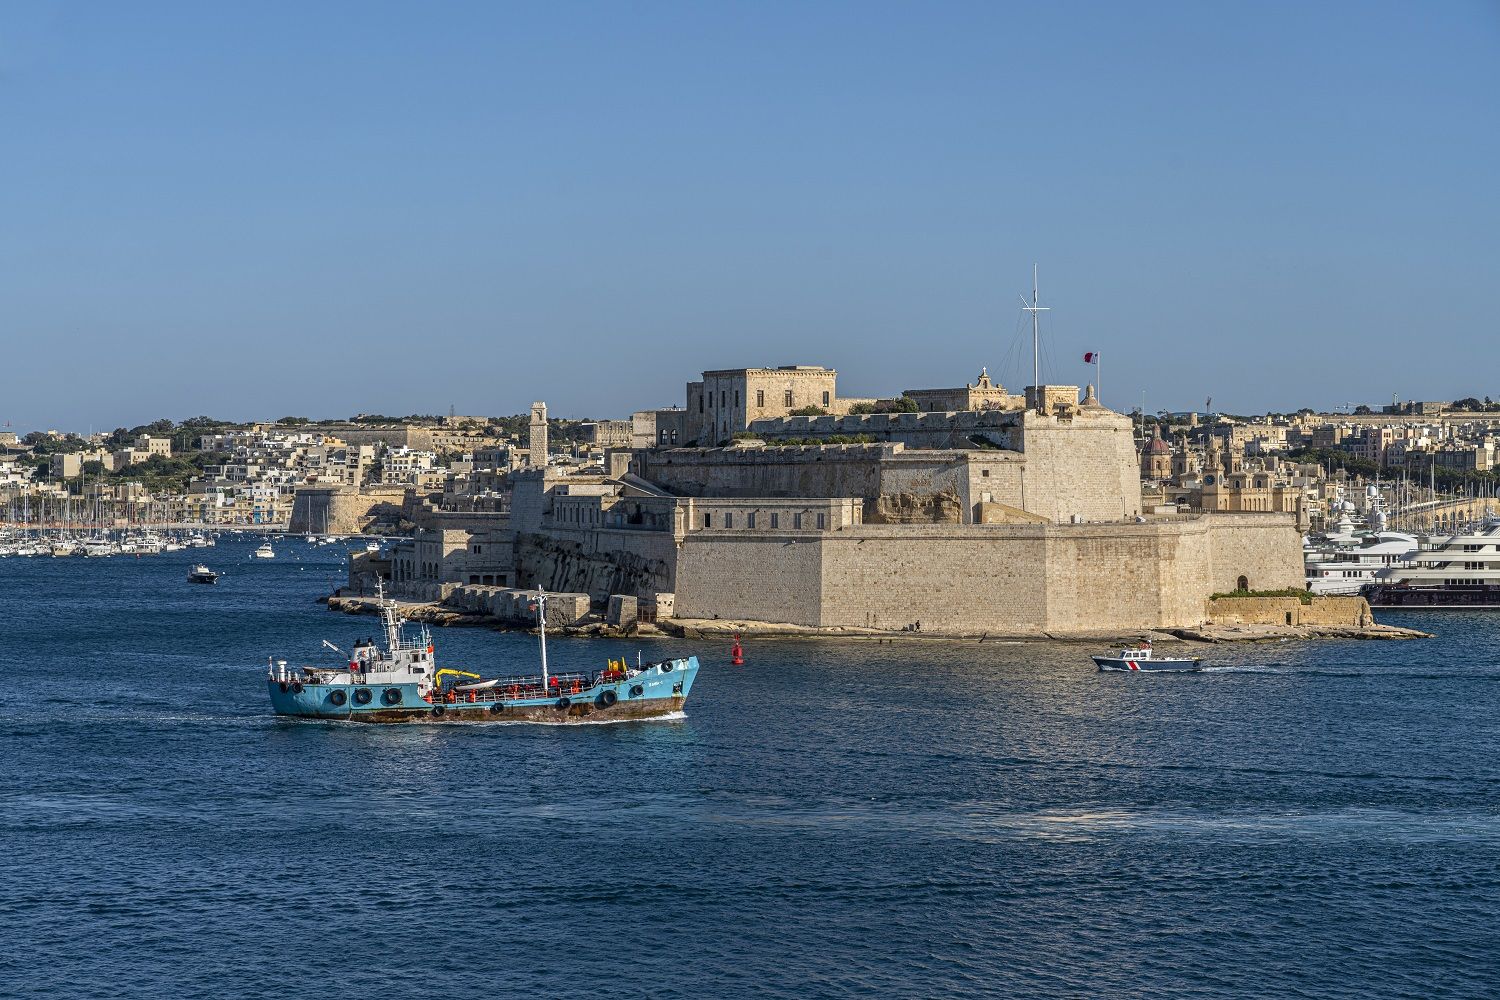 Te contamos dónde cómer, dónde dormir y qué ver en Malta.